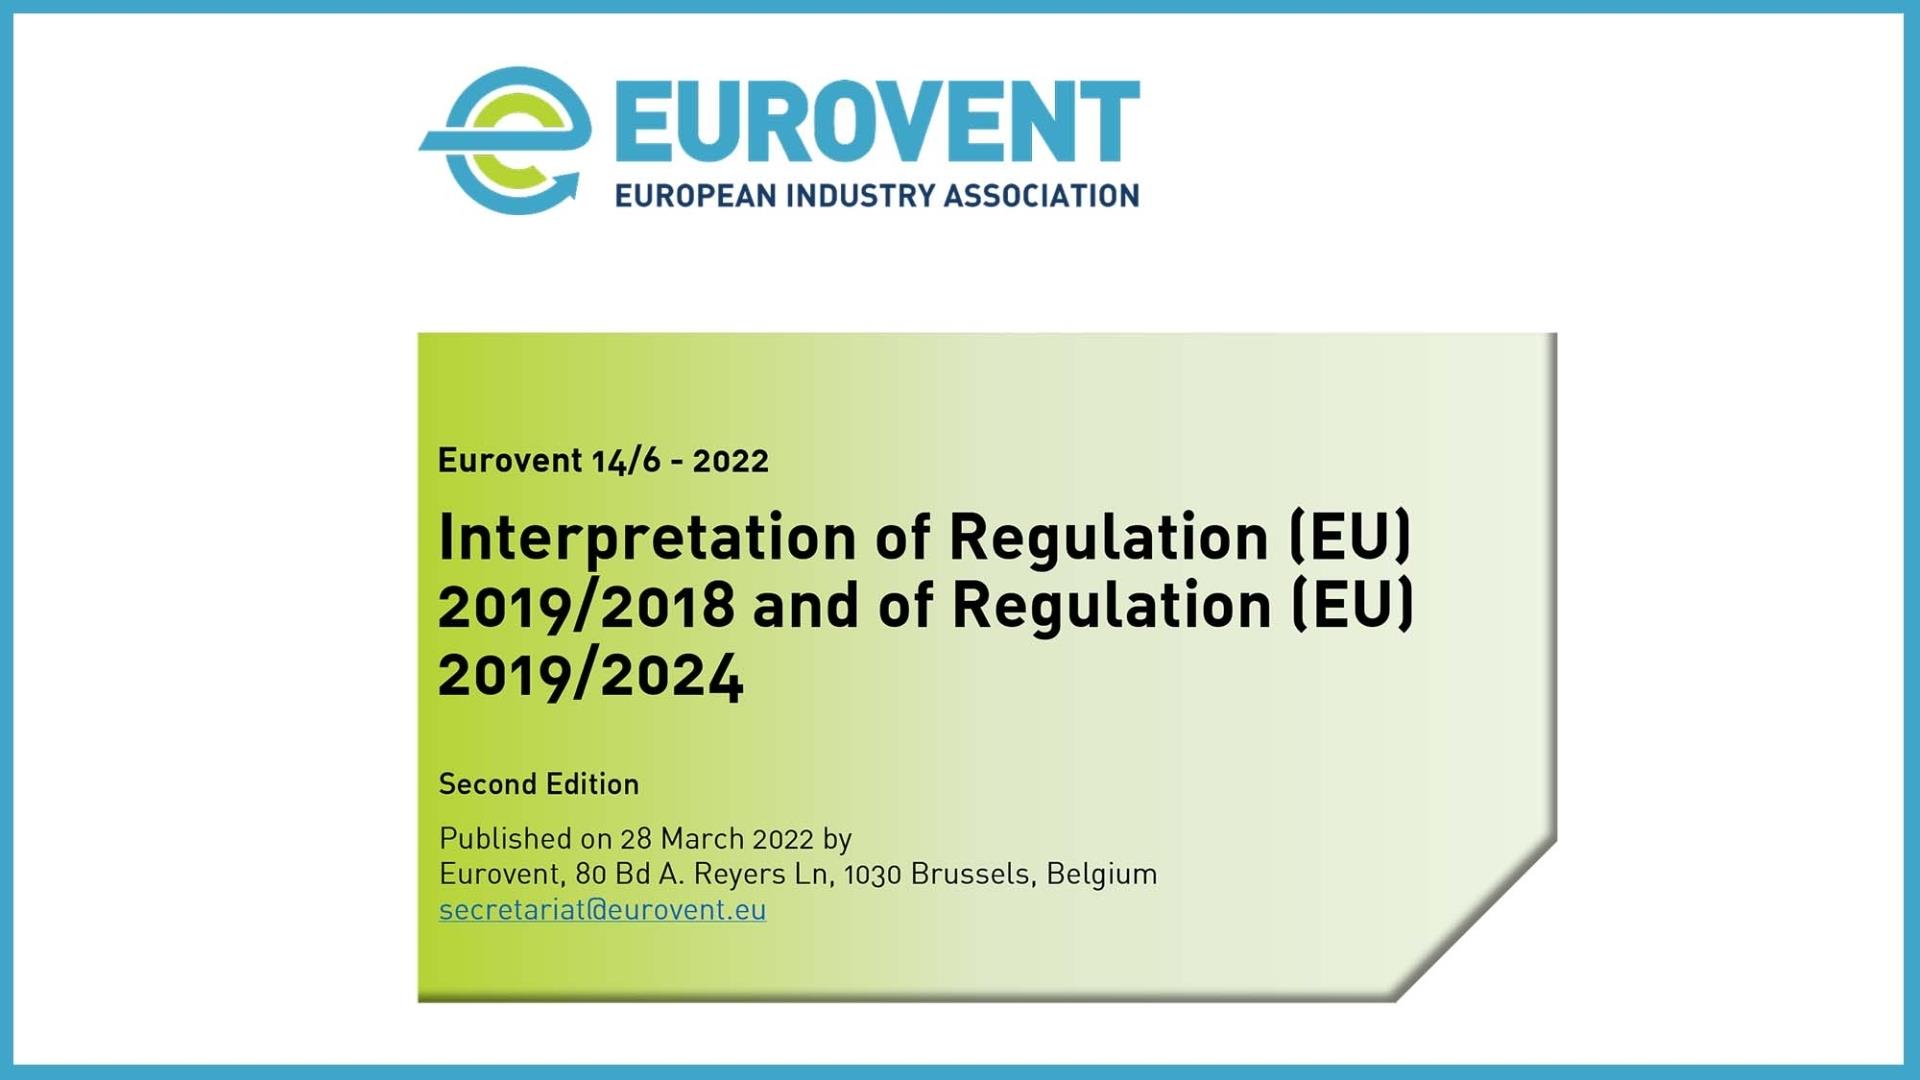 Apparecchi di refrigerazione con funzione di vendita diretta – Etichettatura energetica e progettazione ecocompatibile: la Raccomandazione 14/6 Eurovent